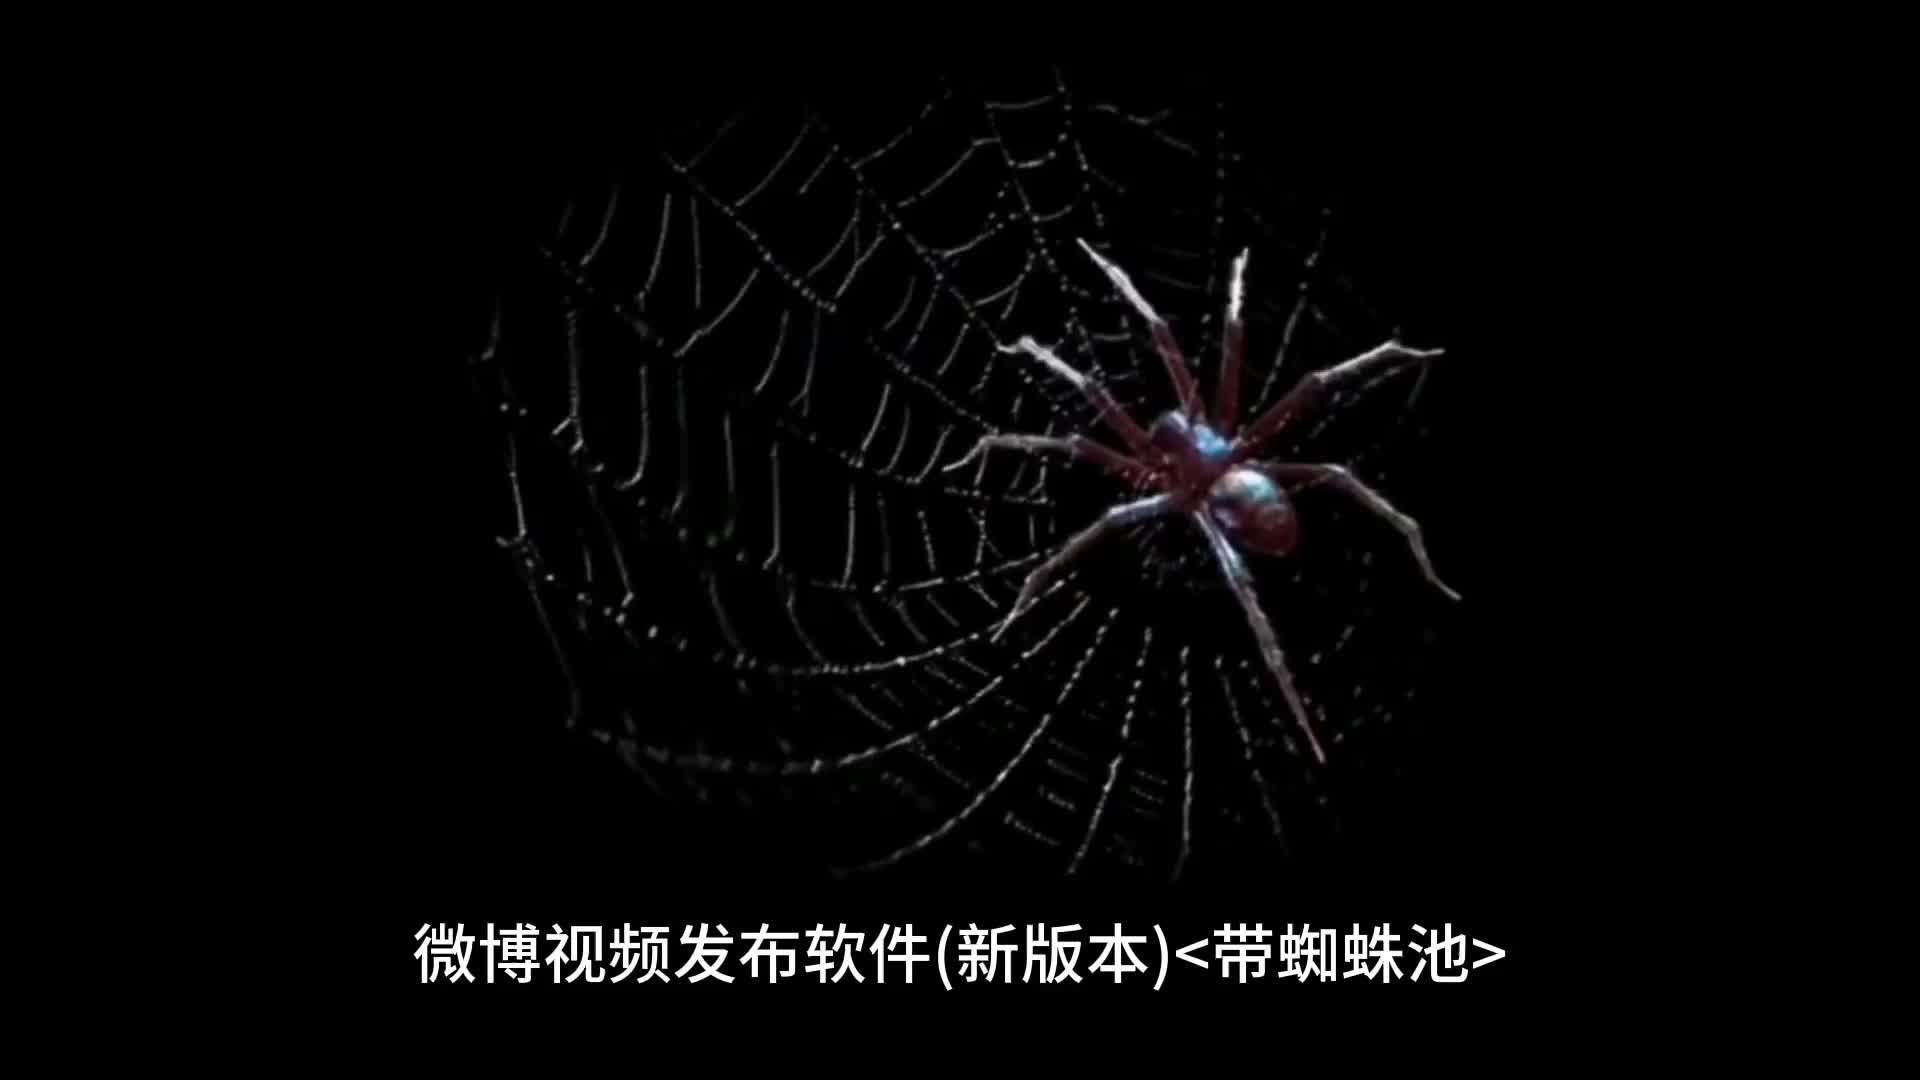 微博视频发布软件(新版本)带蜘蛛池